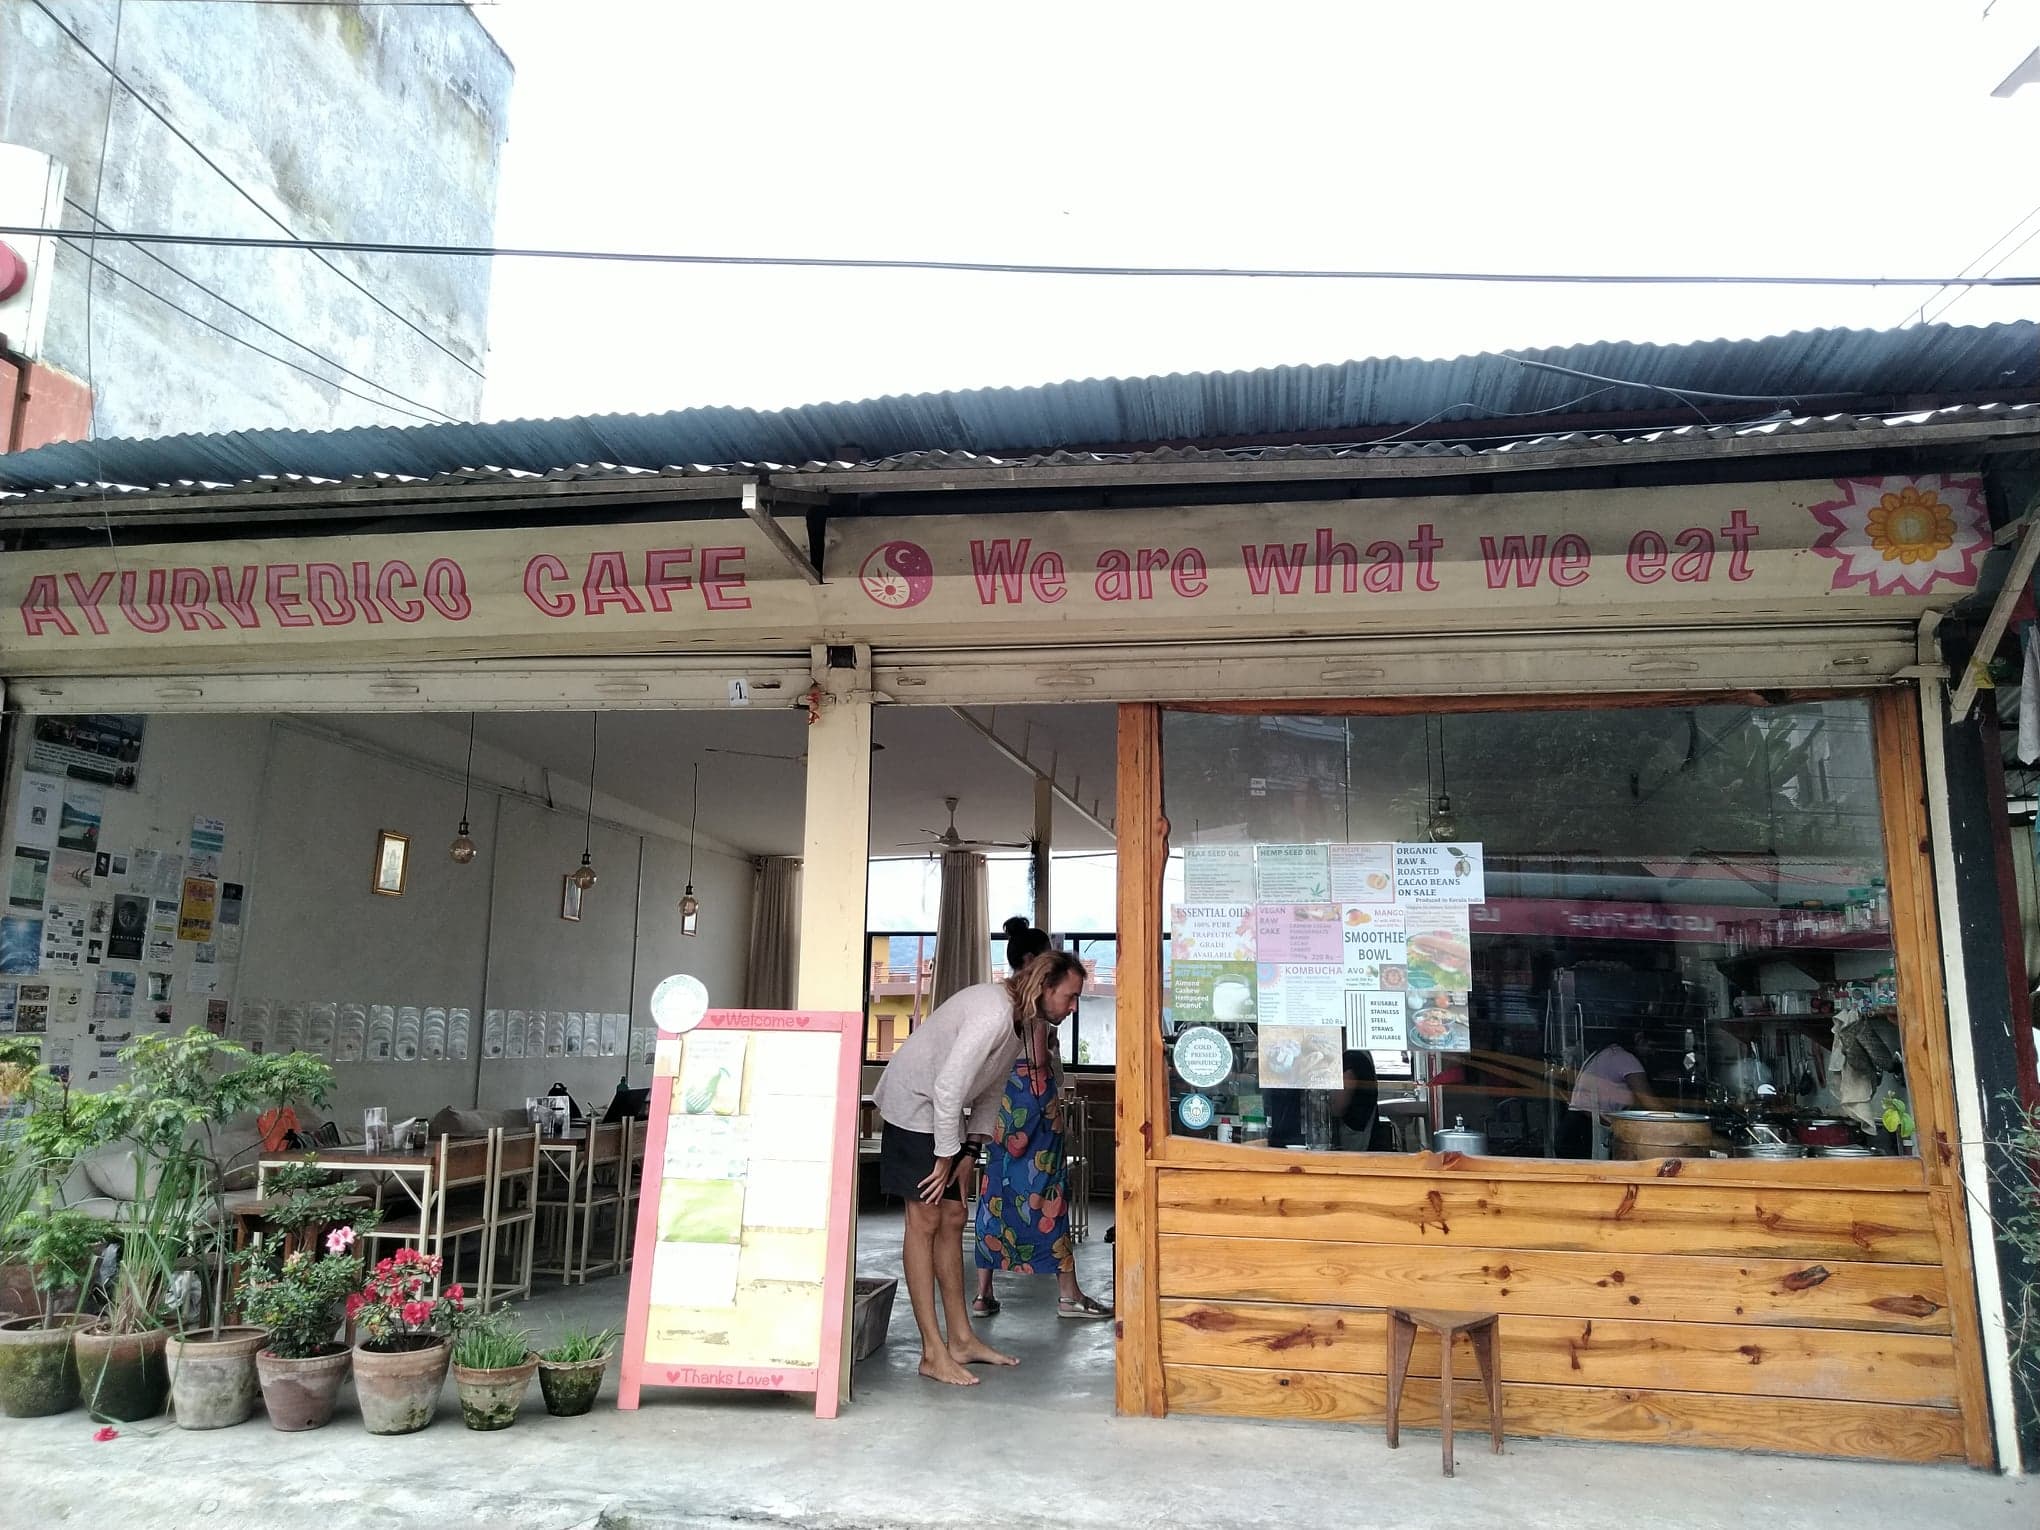 Ayurvedico Cafe/ Phokara Nepal